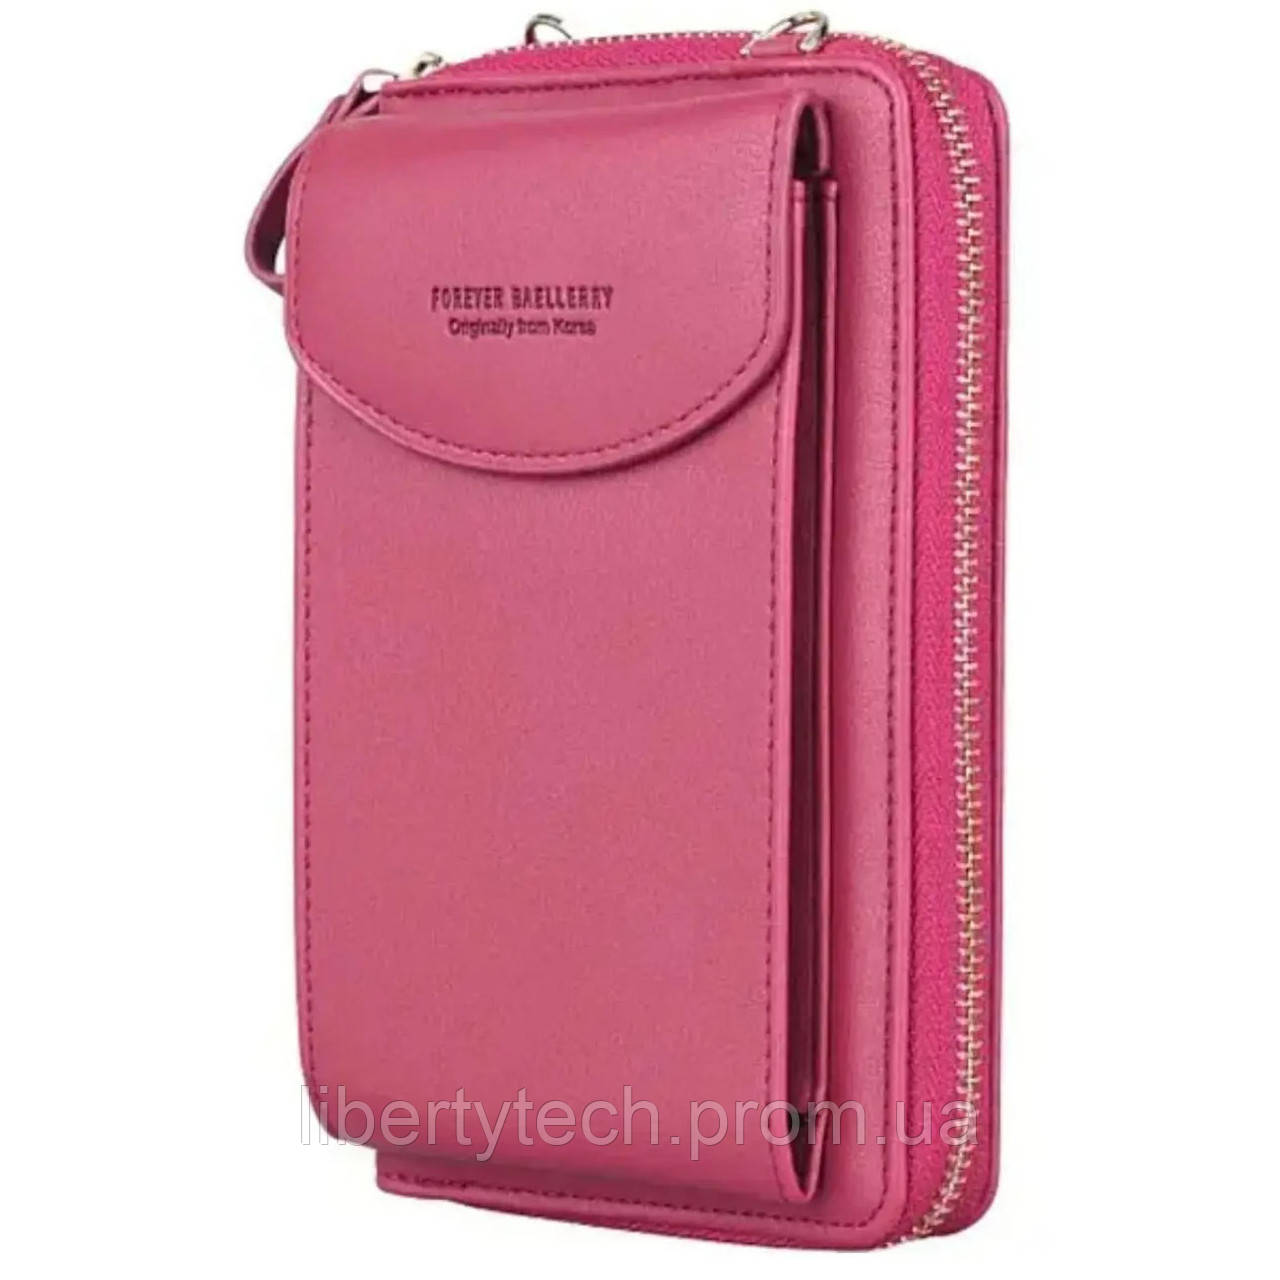 Жіночий клатч-шумка BAELLERRY Forever Young, гаманець сумка з відділенням для телефону. LB-612 Колір: рожевий